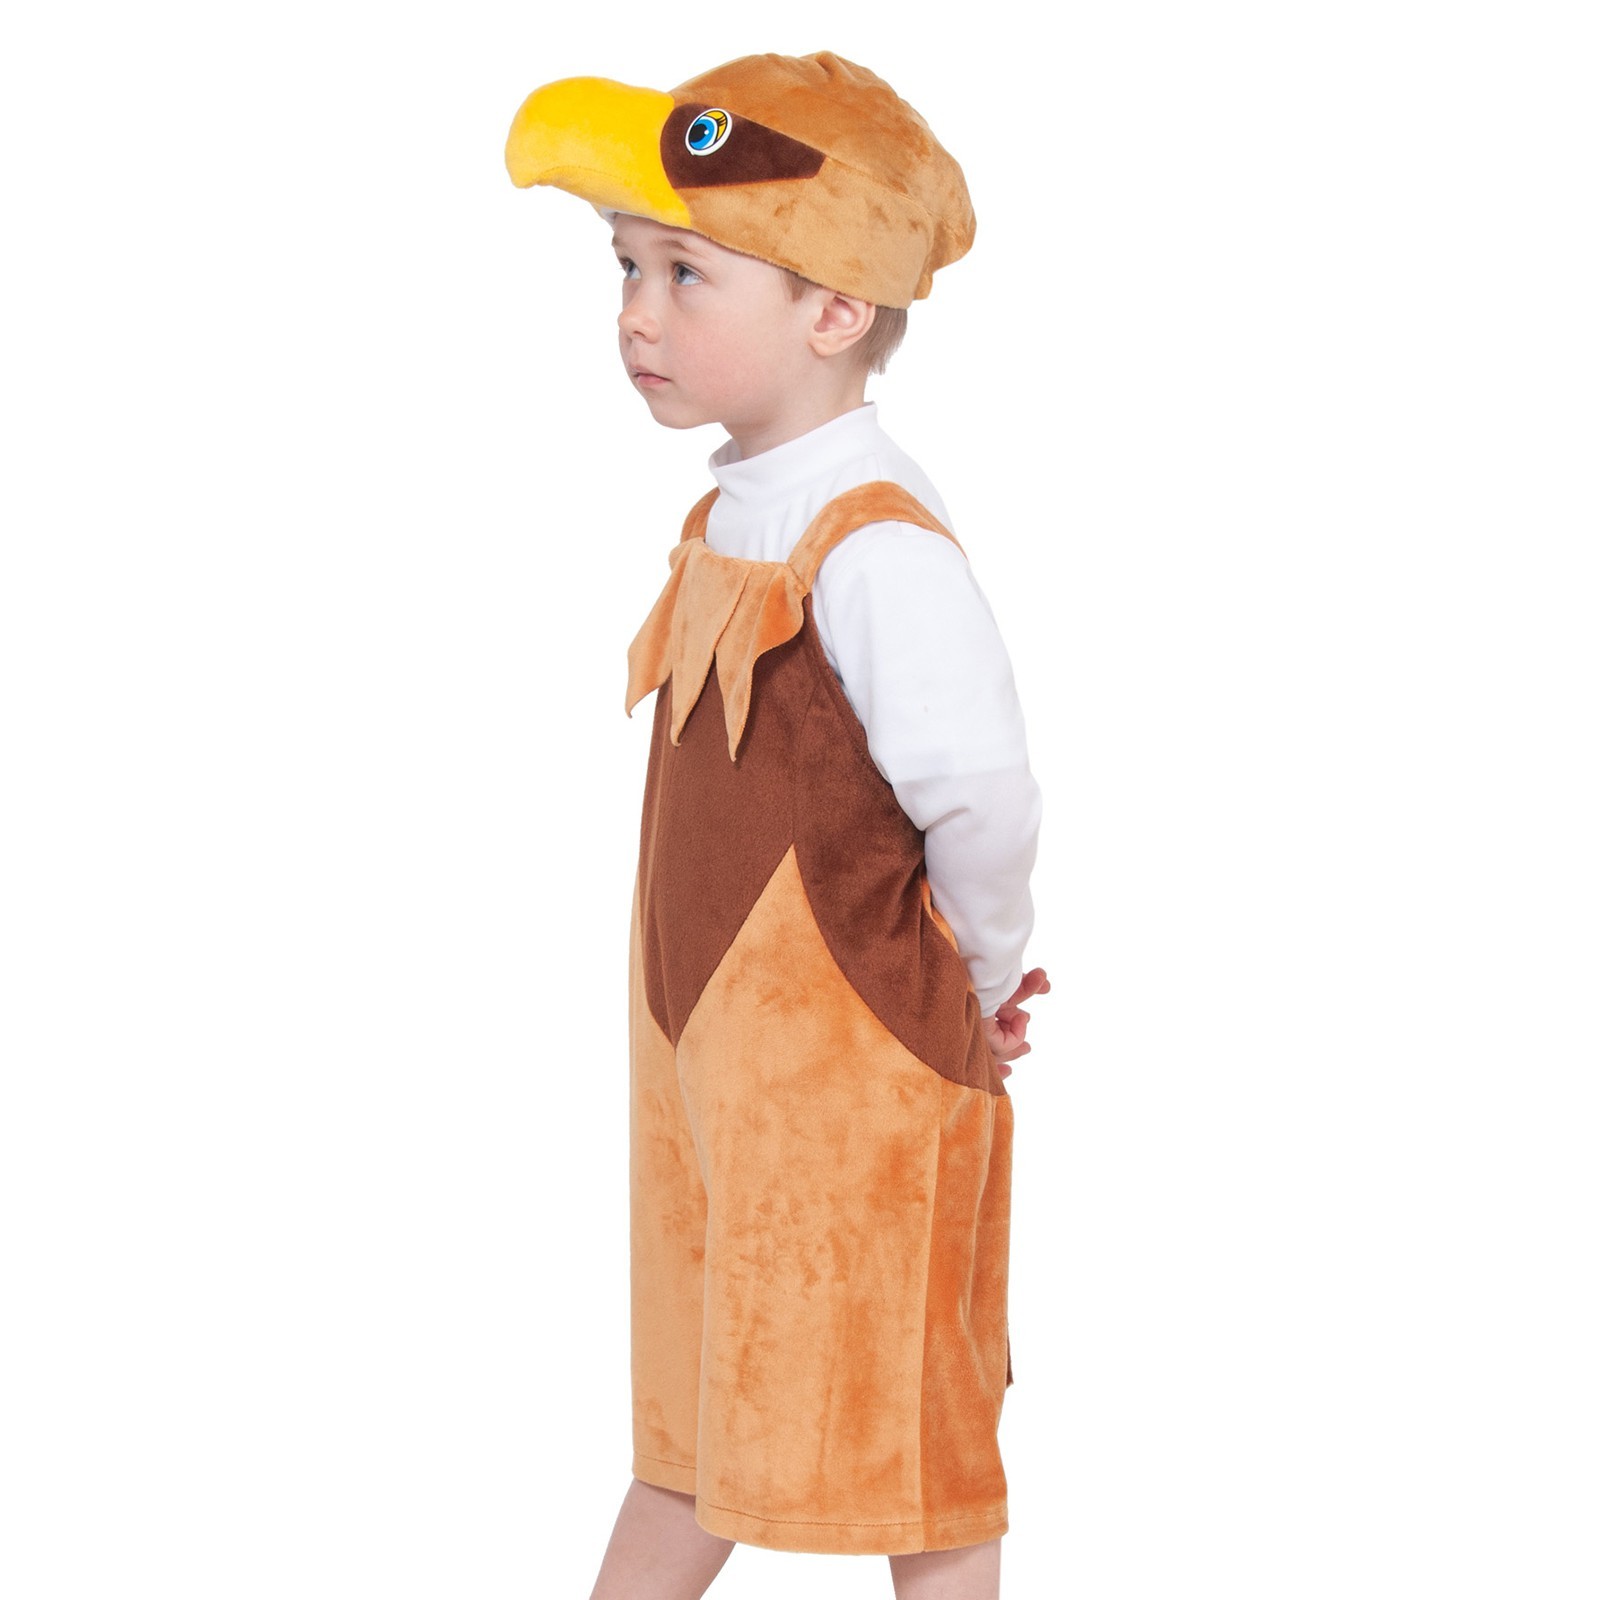 Карнавальный костюм детский Карнавалофф Орел, коричневый, 122 костюм карнавальный элит классик жук коричневый детский р 28 116 см